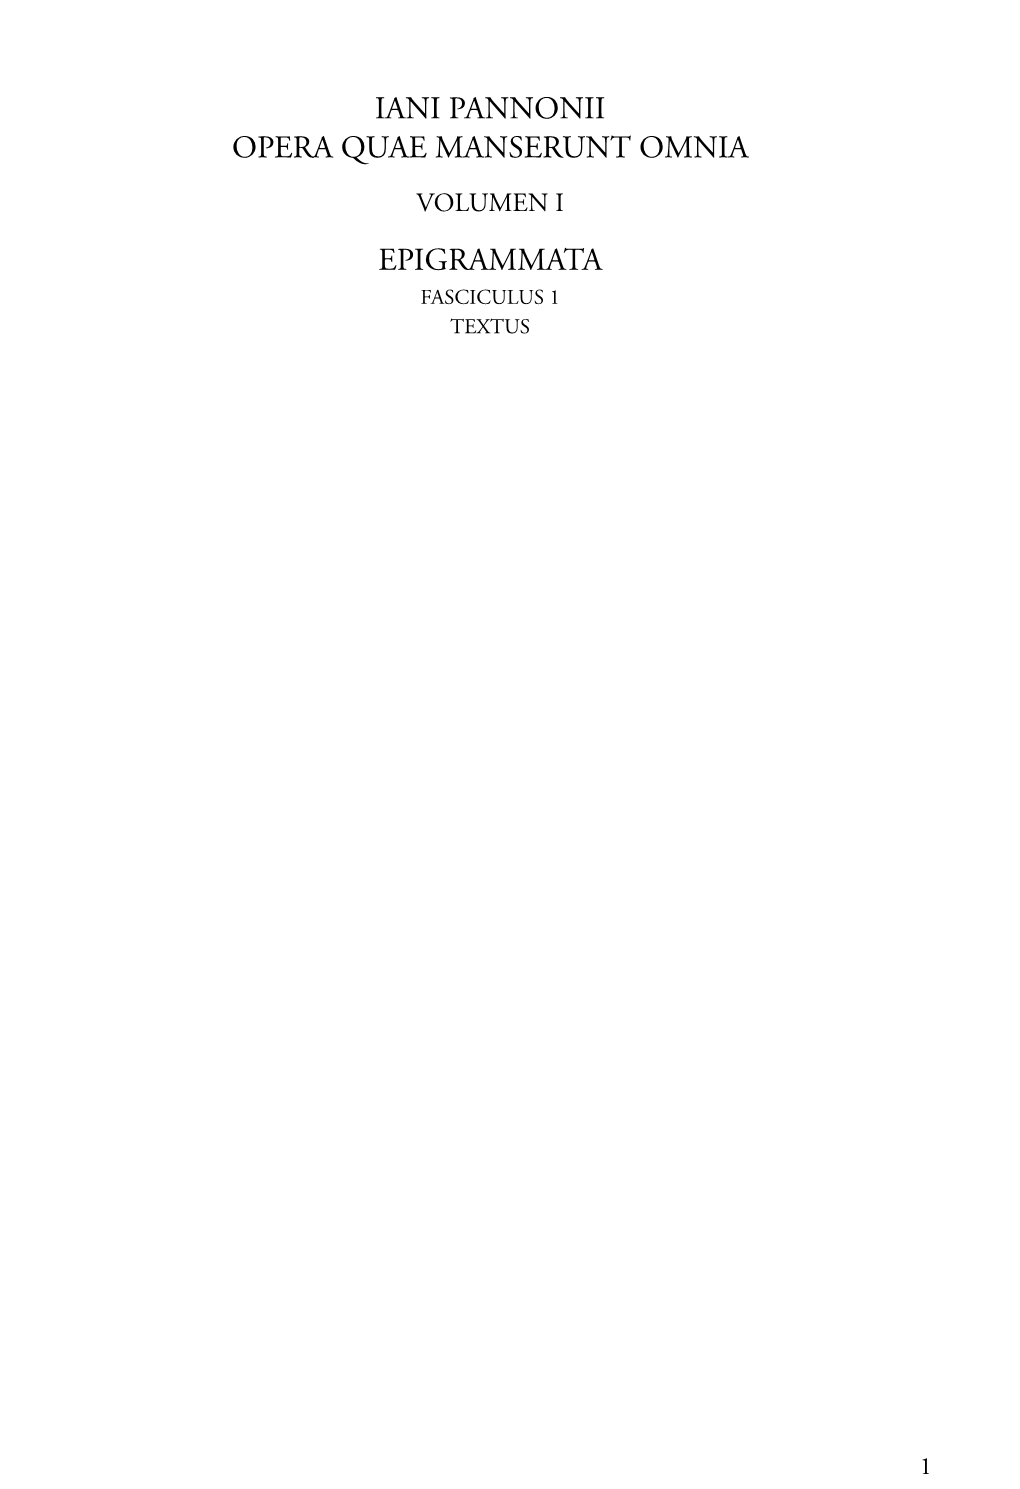 Iani Pannonii Opera Quae Manserunt Omnia Volumen I Epigrammata Fasciculus 1 Textus